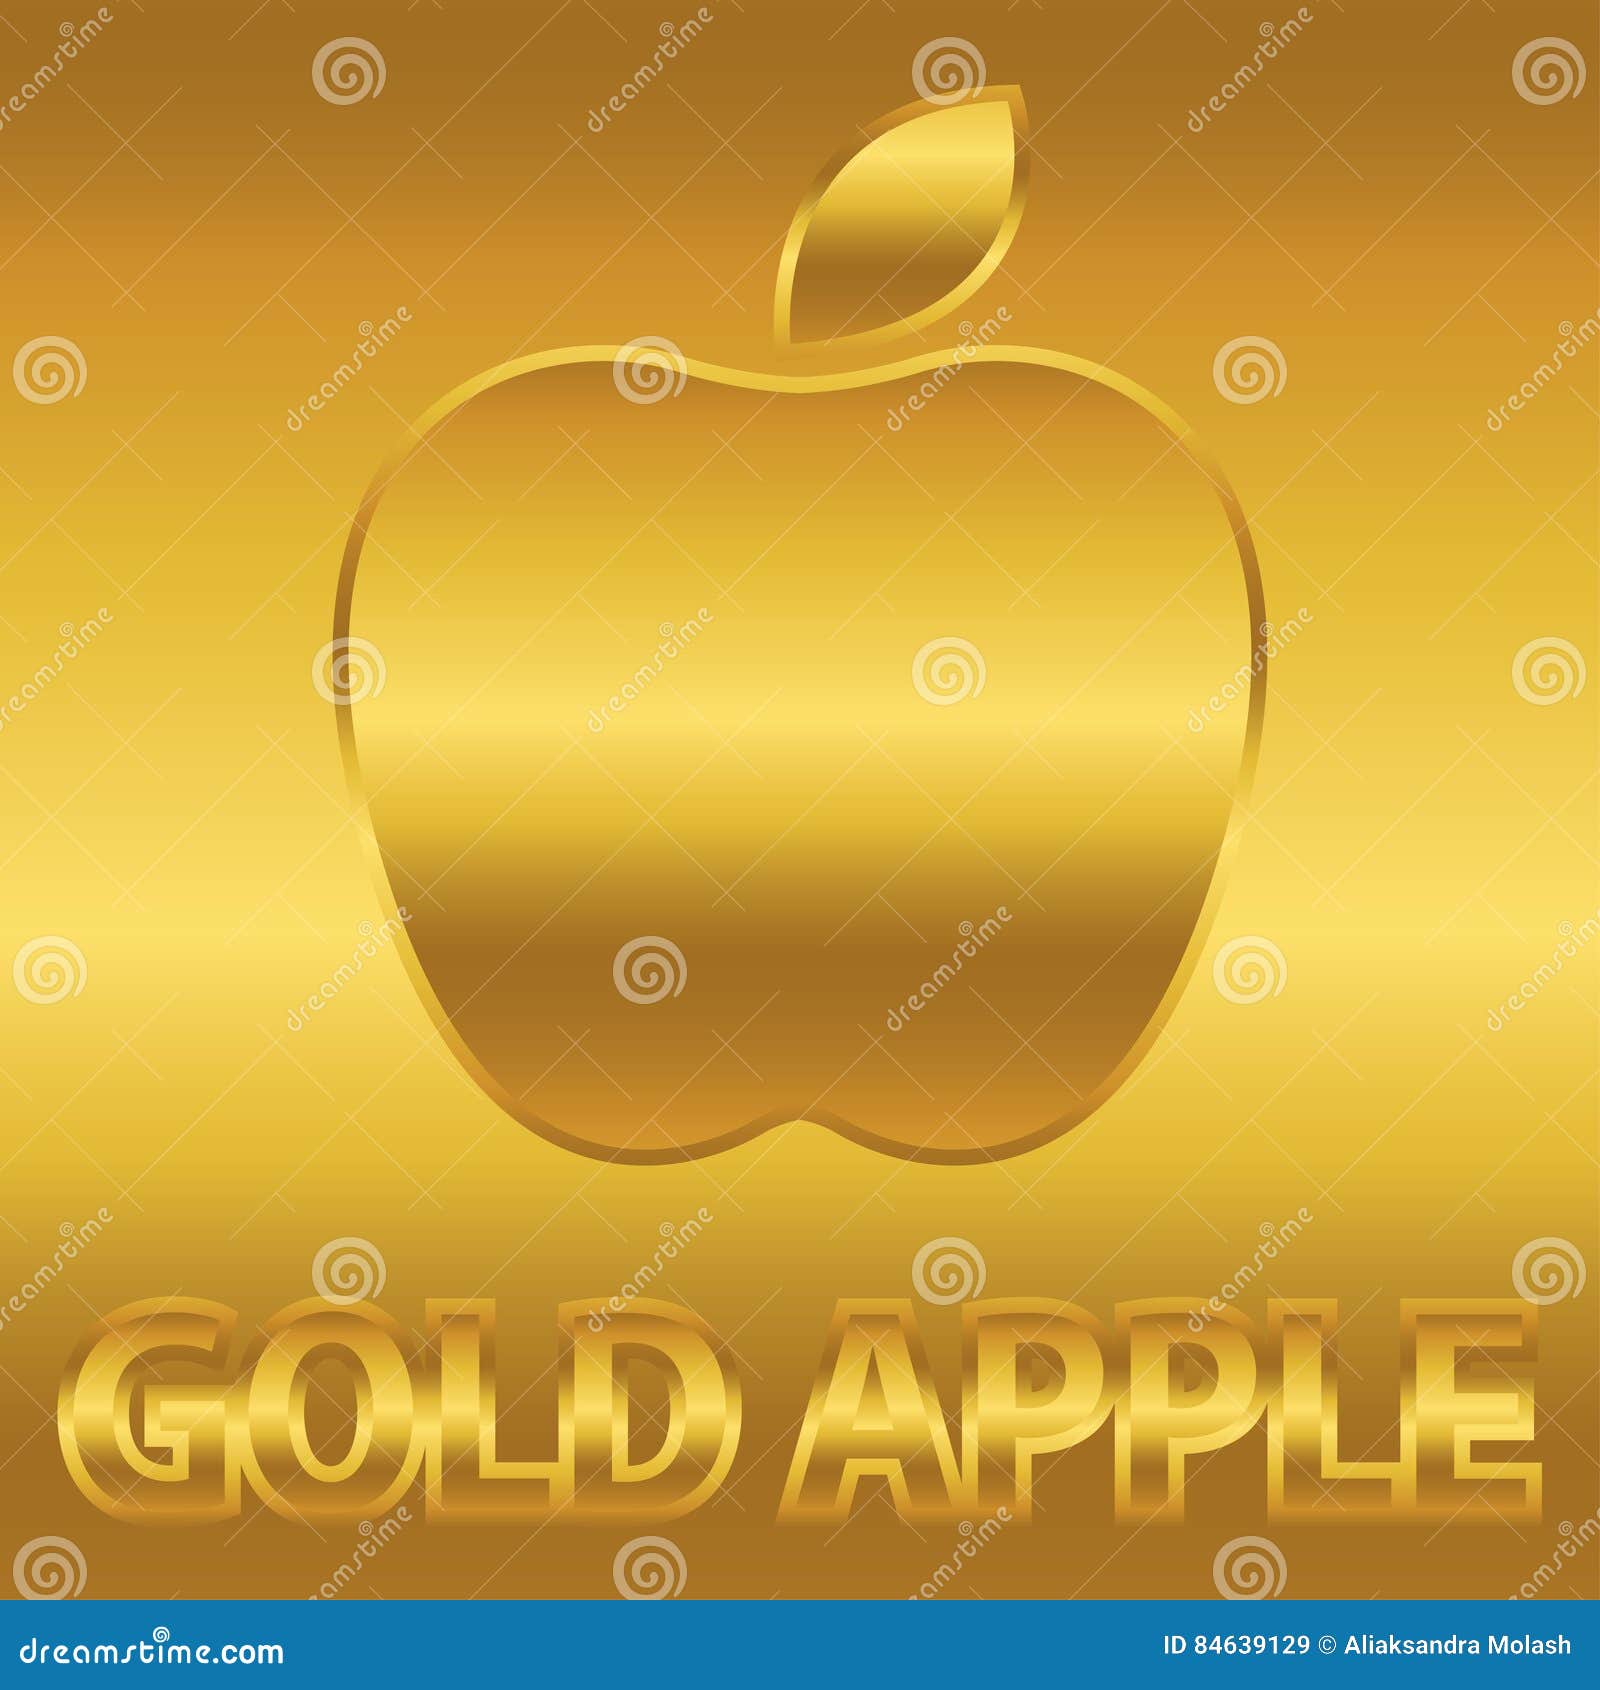 Установить золотое яблоко на телефон. Золотое яблоко. Золотой Apple. Золотое яблоко символ. Gold Apple логотип.